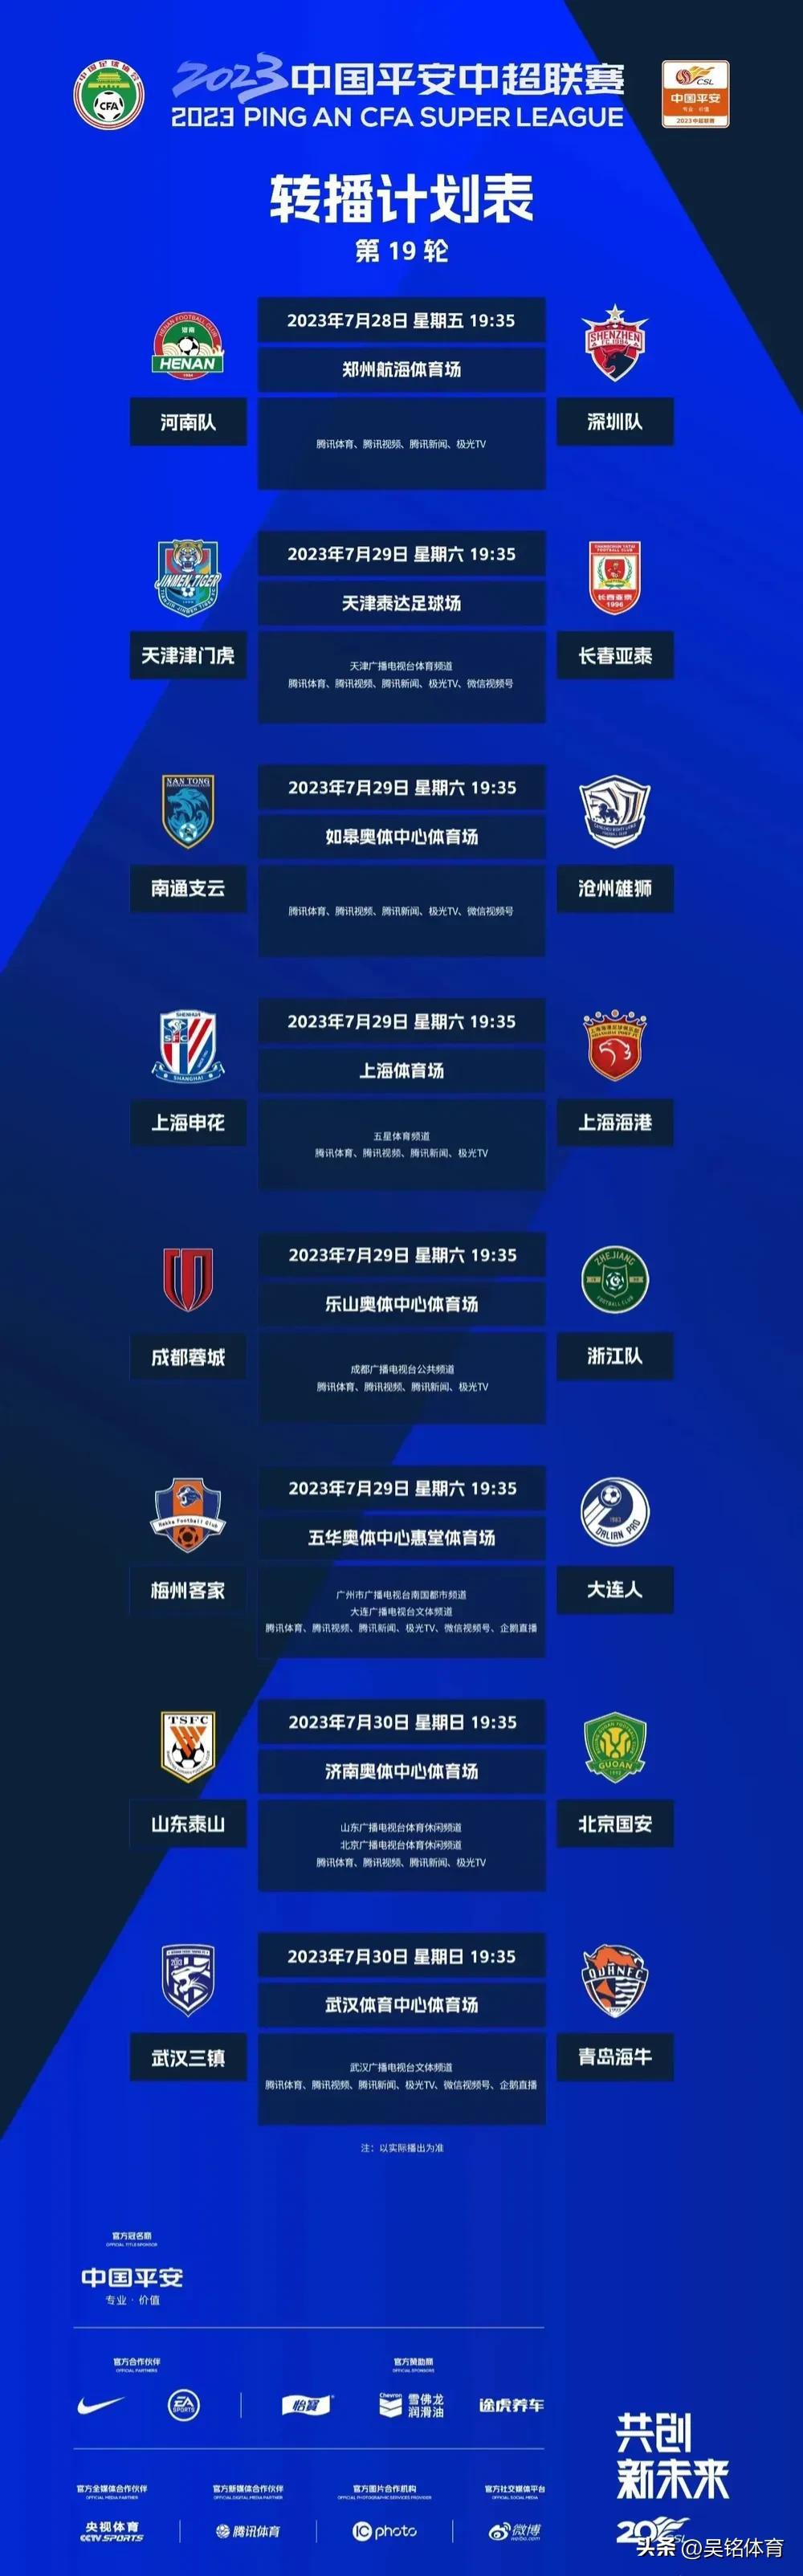 中超联赛第19轮，最新精准预测来了，看看几场焦点战情况

河南2:0深圳
津门虎(1)